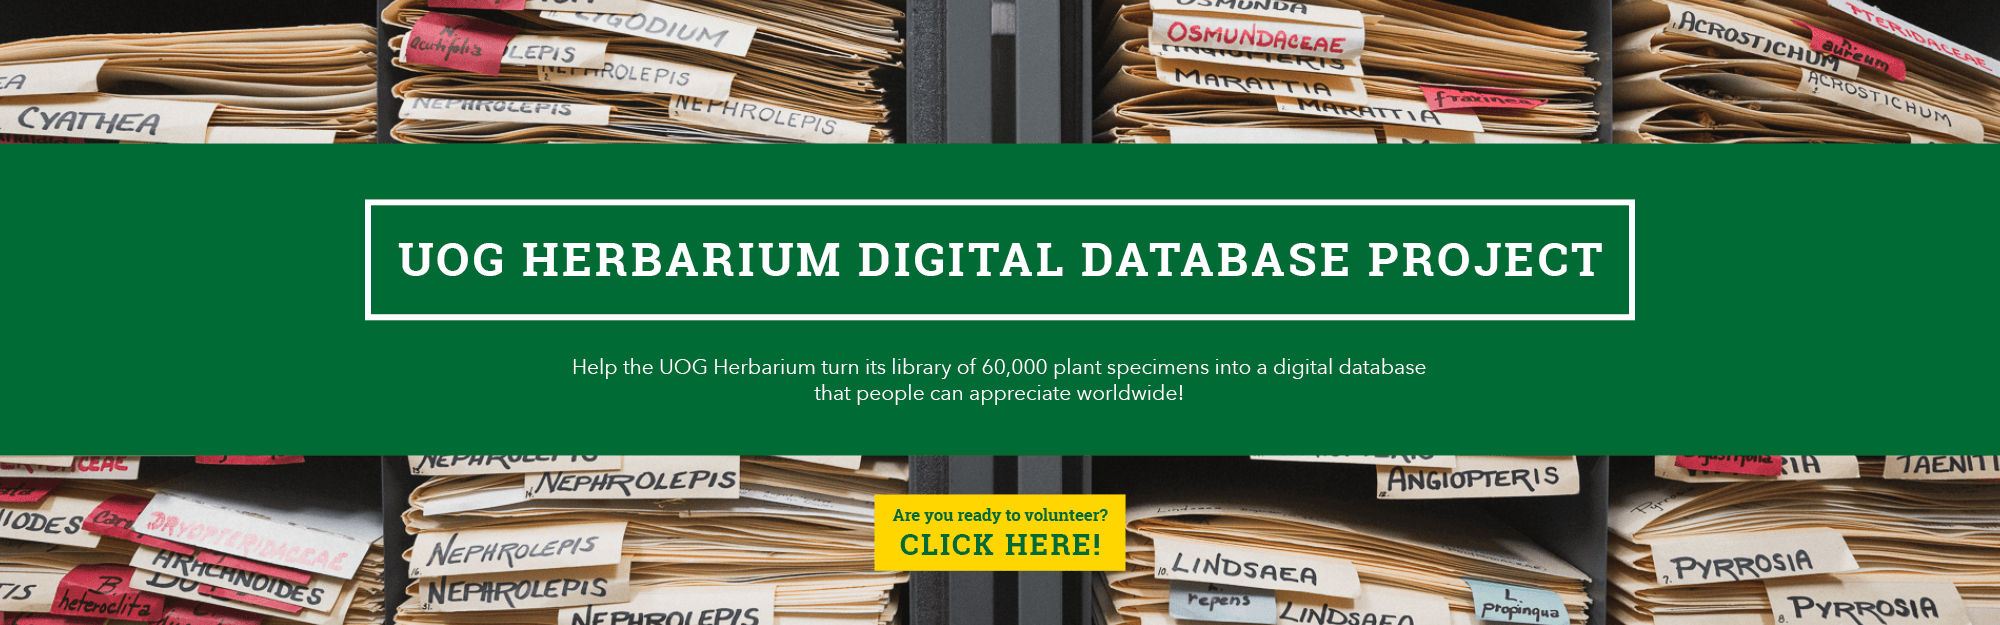 UOG Herbarium Digital Database Project